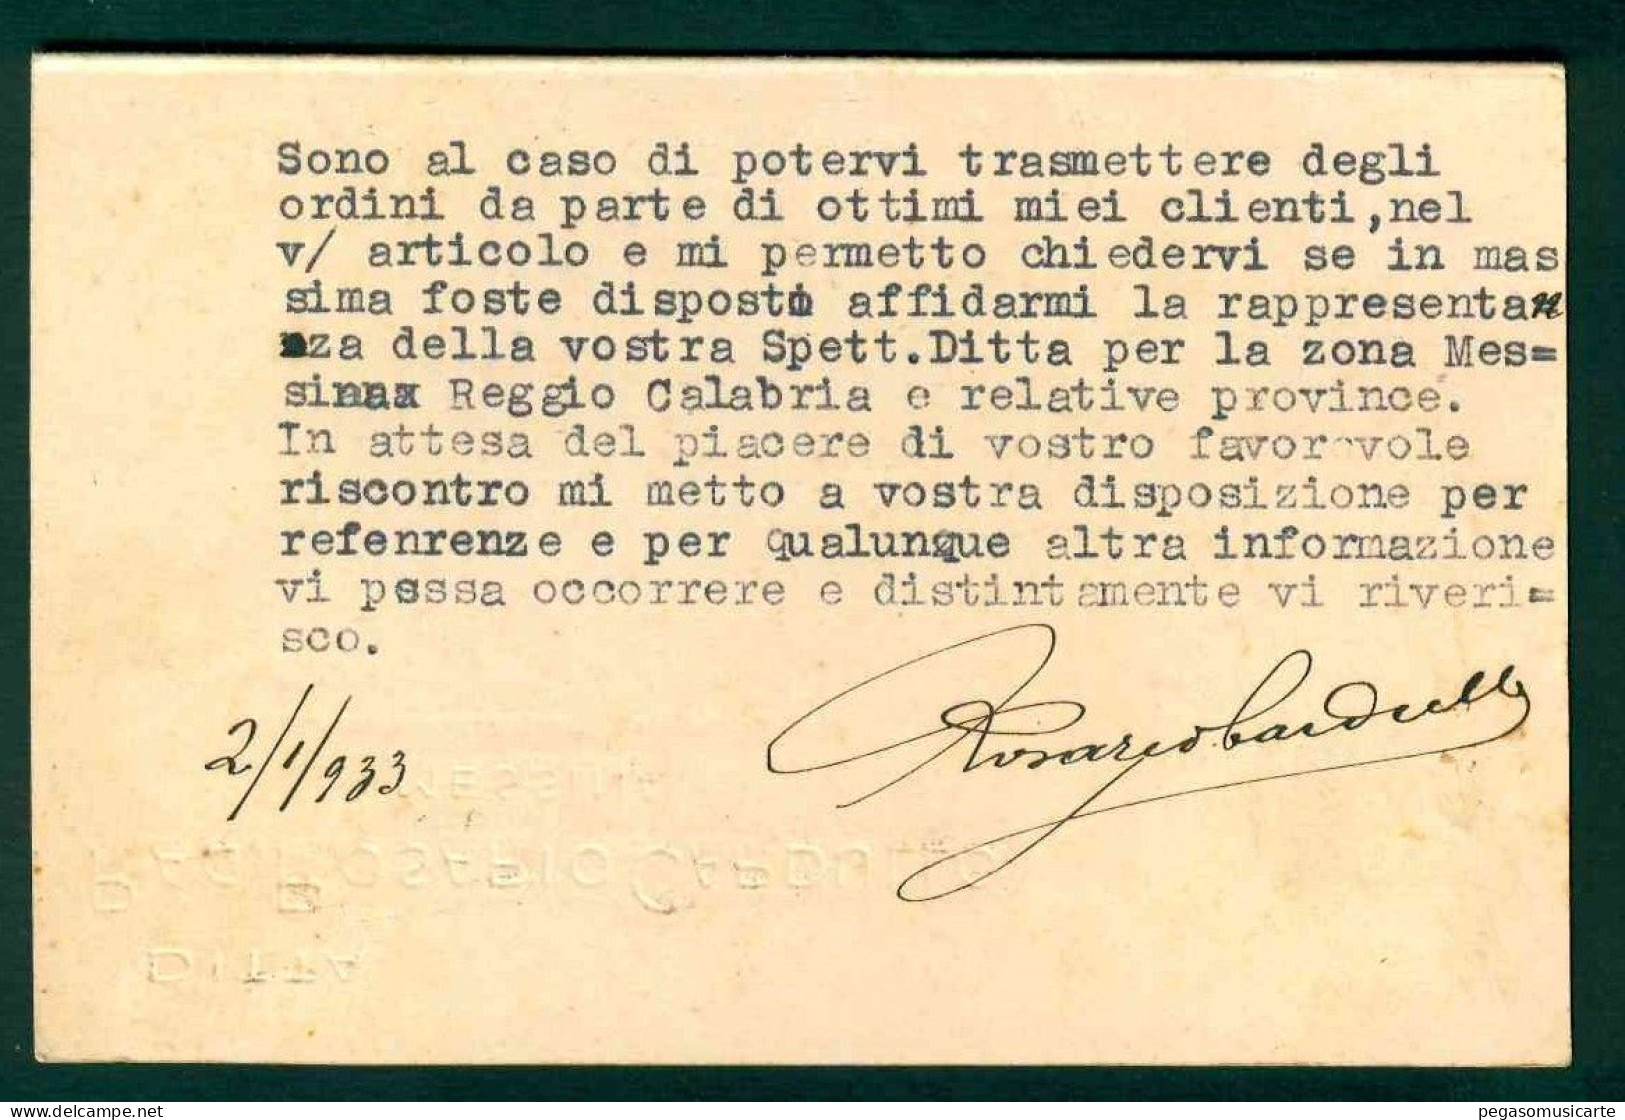 BB034 - DITTA ROSARIO CARDULLO MESSINA 1933 CARTOLINA COMMERCIALE PER S ELPIDIO A MARE ASCOLI PICENO - Mercanti